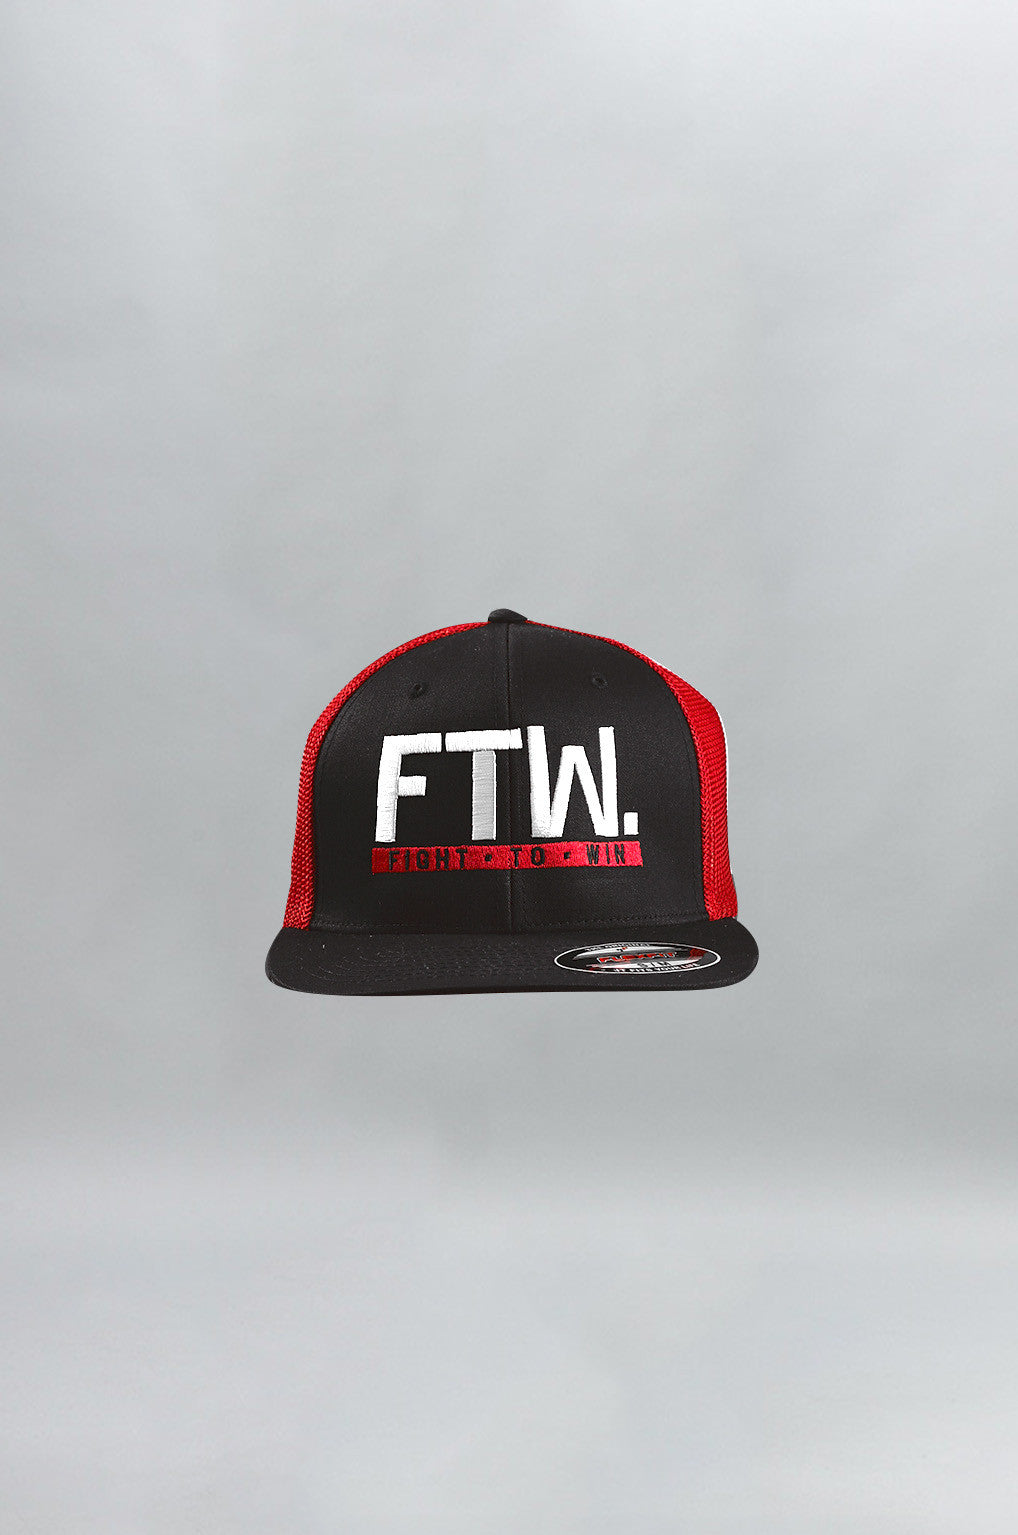 "FTW." Mesh Trucker – Black/Red - Head Gear - Gym Apparel Egypt